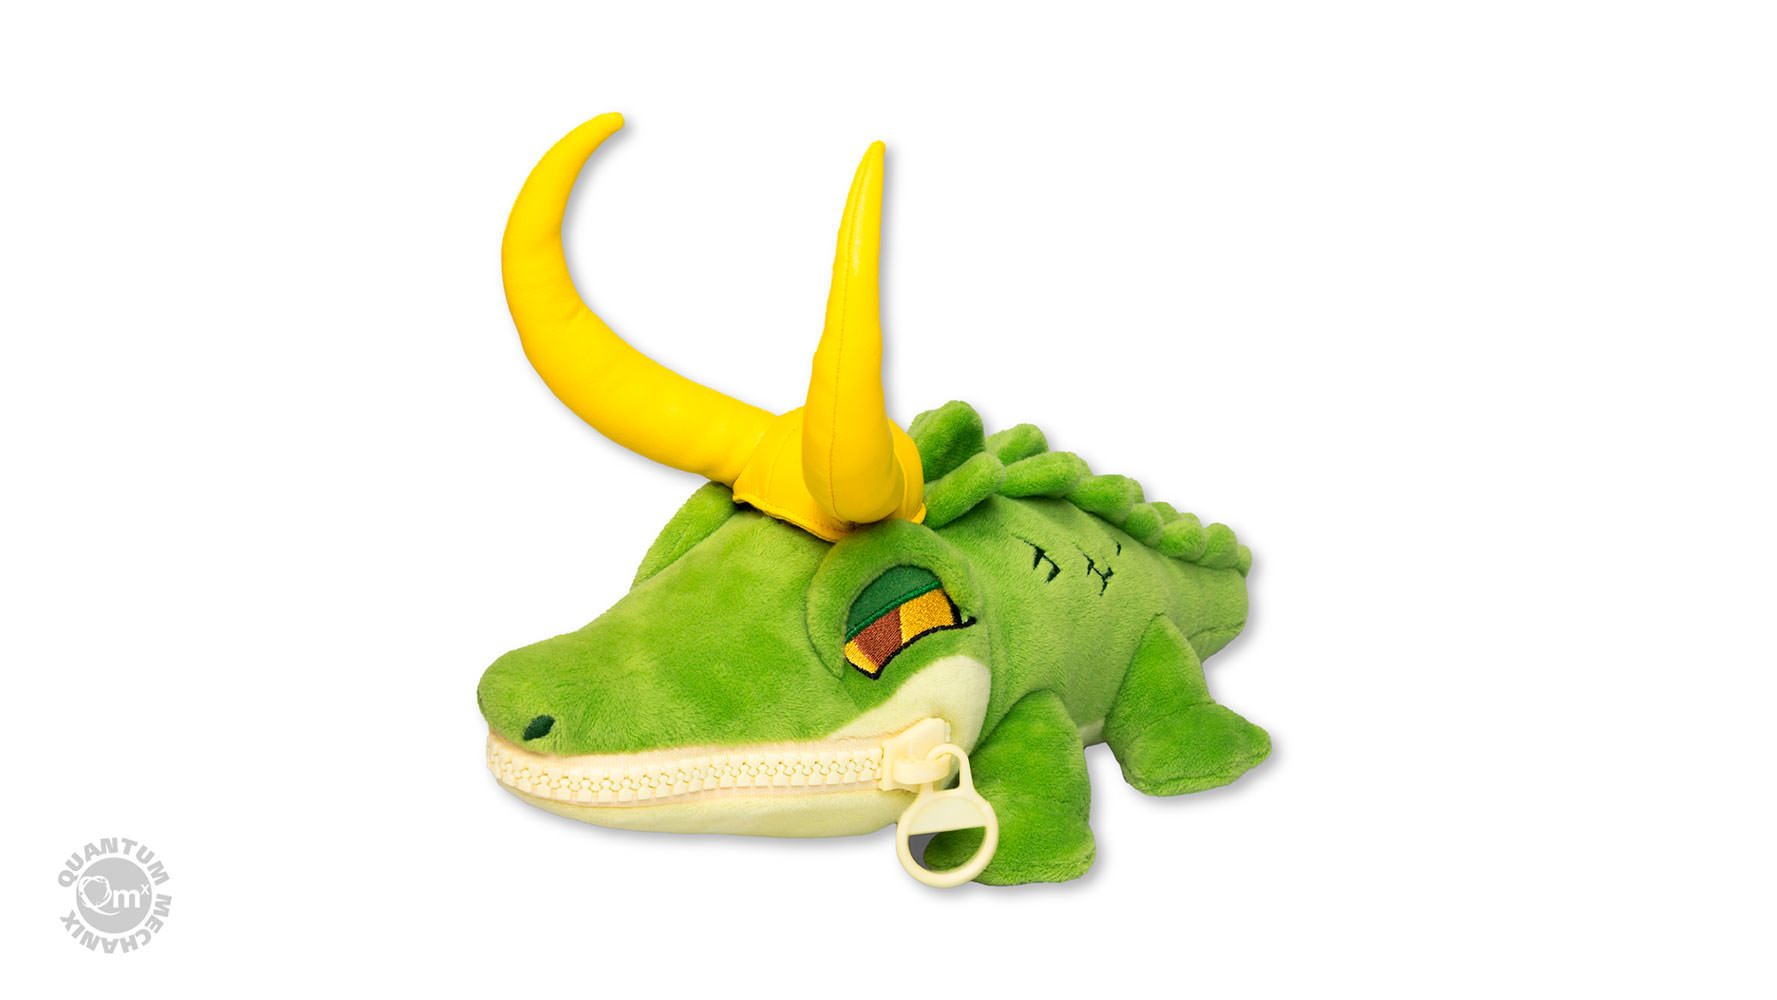 Alligator Loki Zippermouth- Prototype Shown